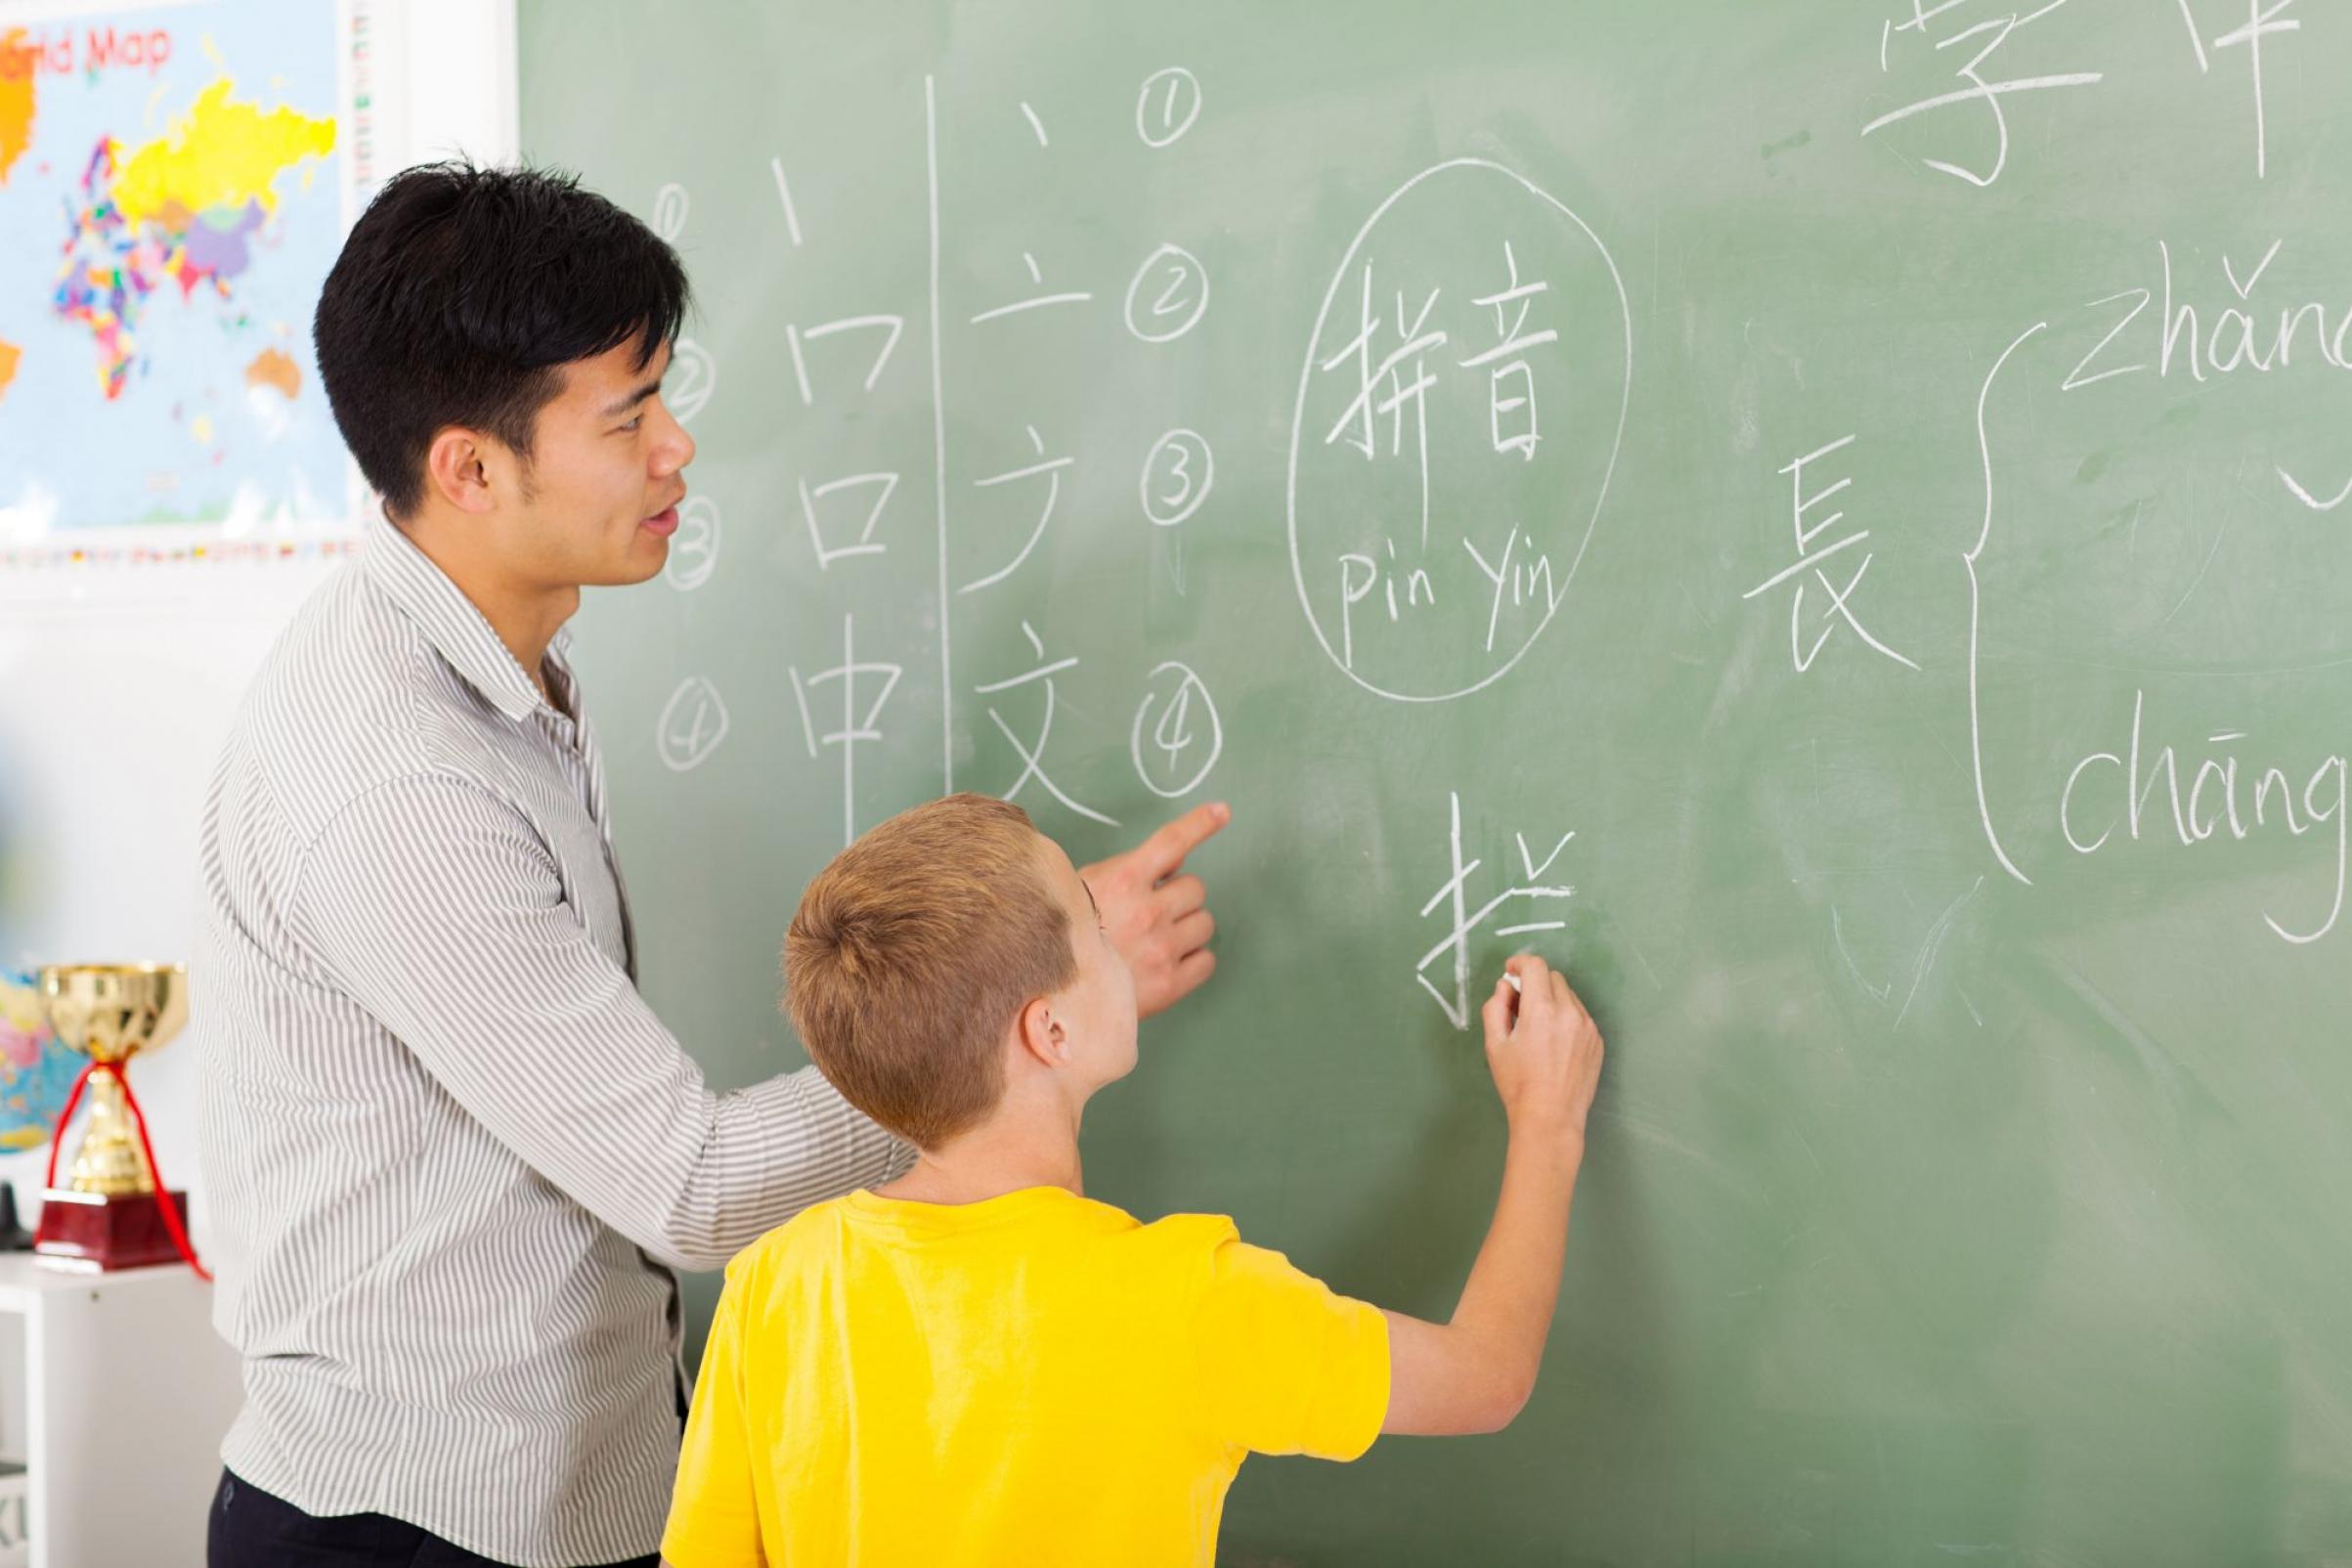 В школе китайский изучает 60 учащихся. Урок китайского. Китайский язык. Изучение китайского языка. Школа китайского языка.